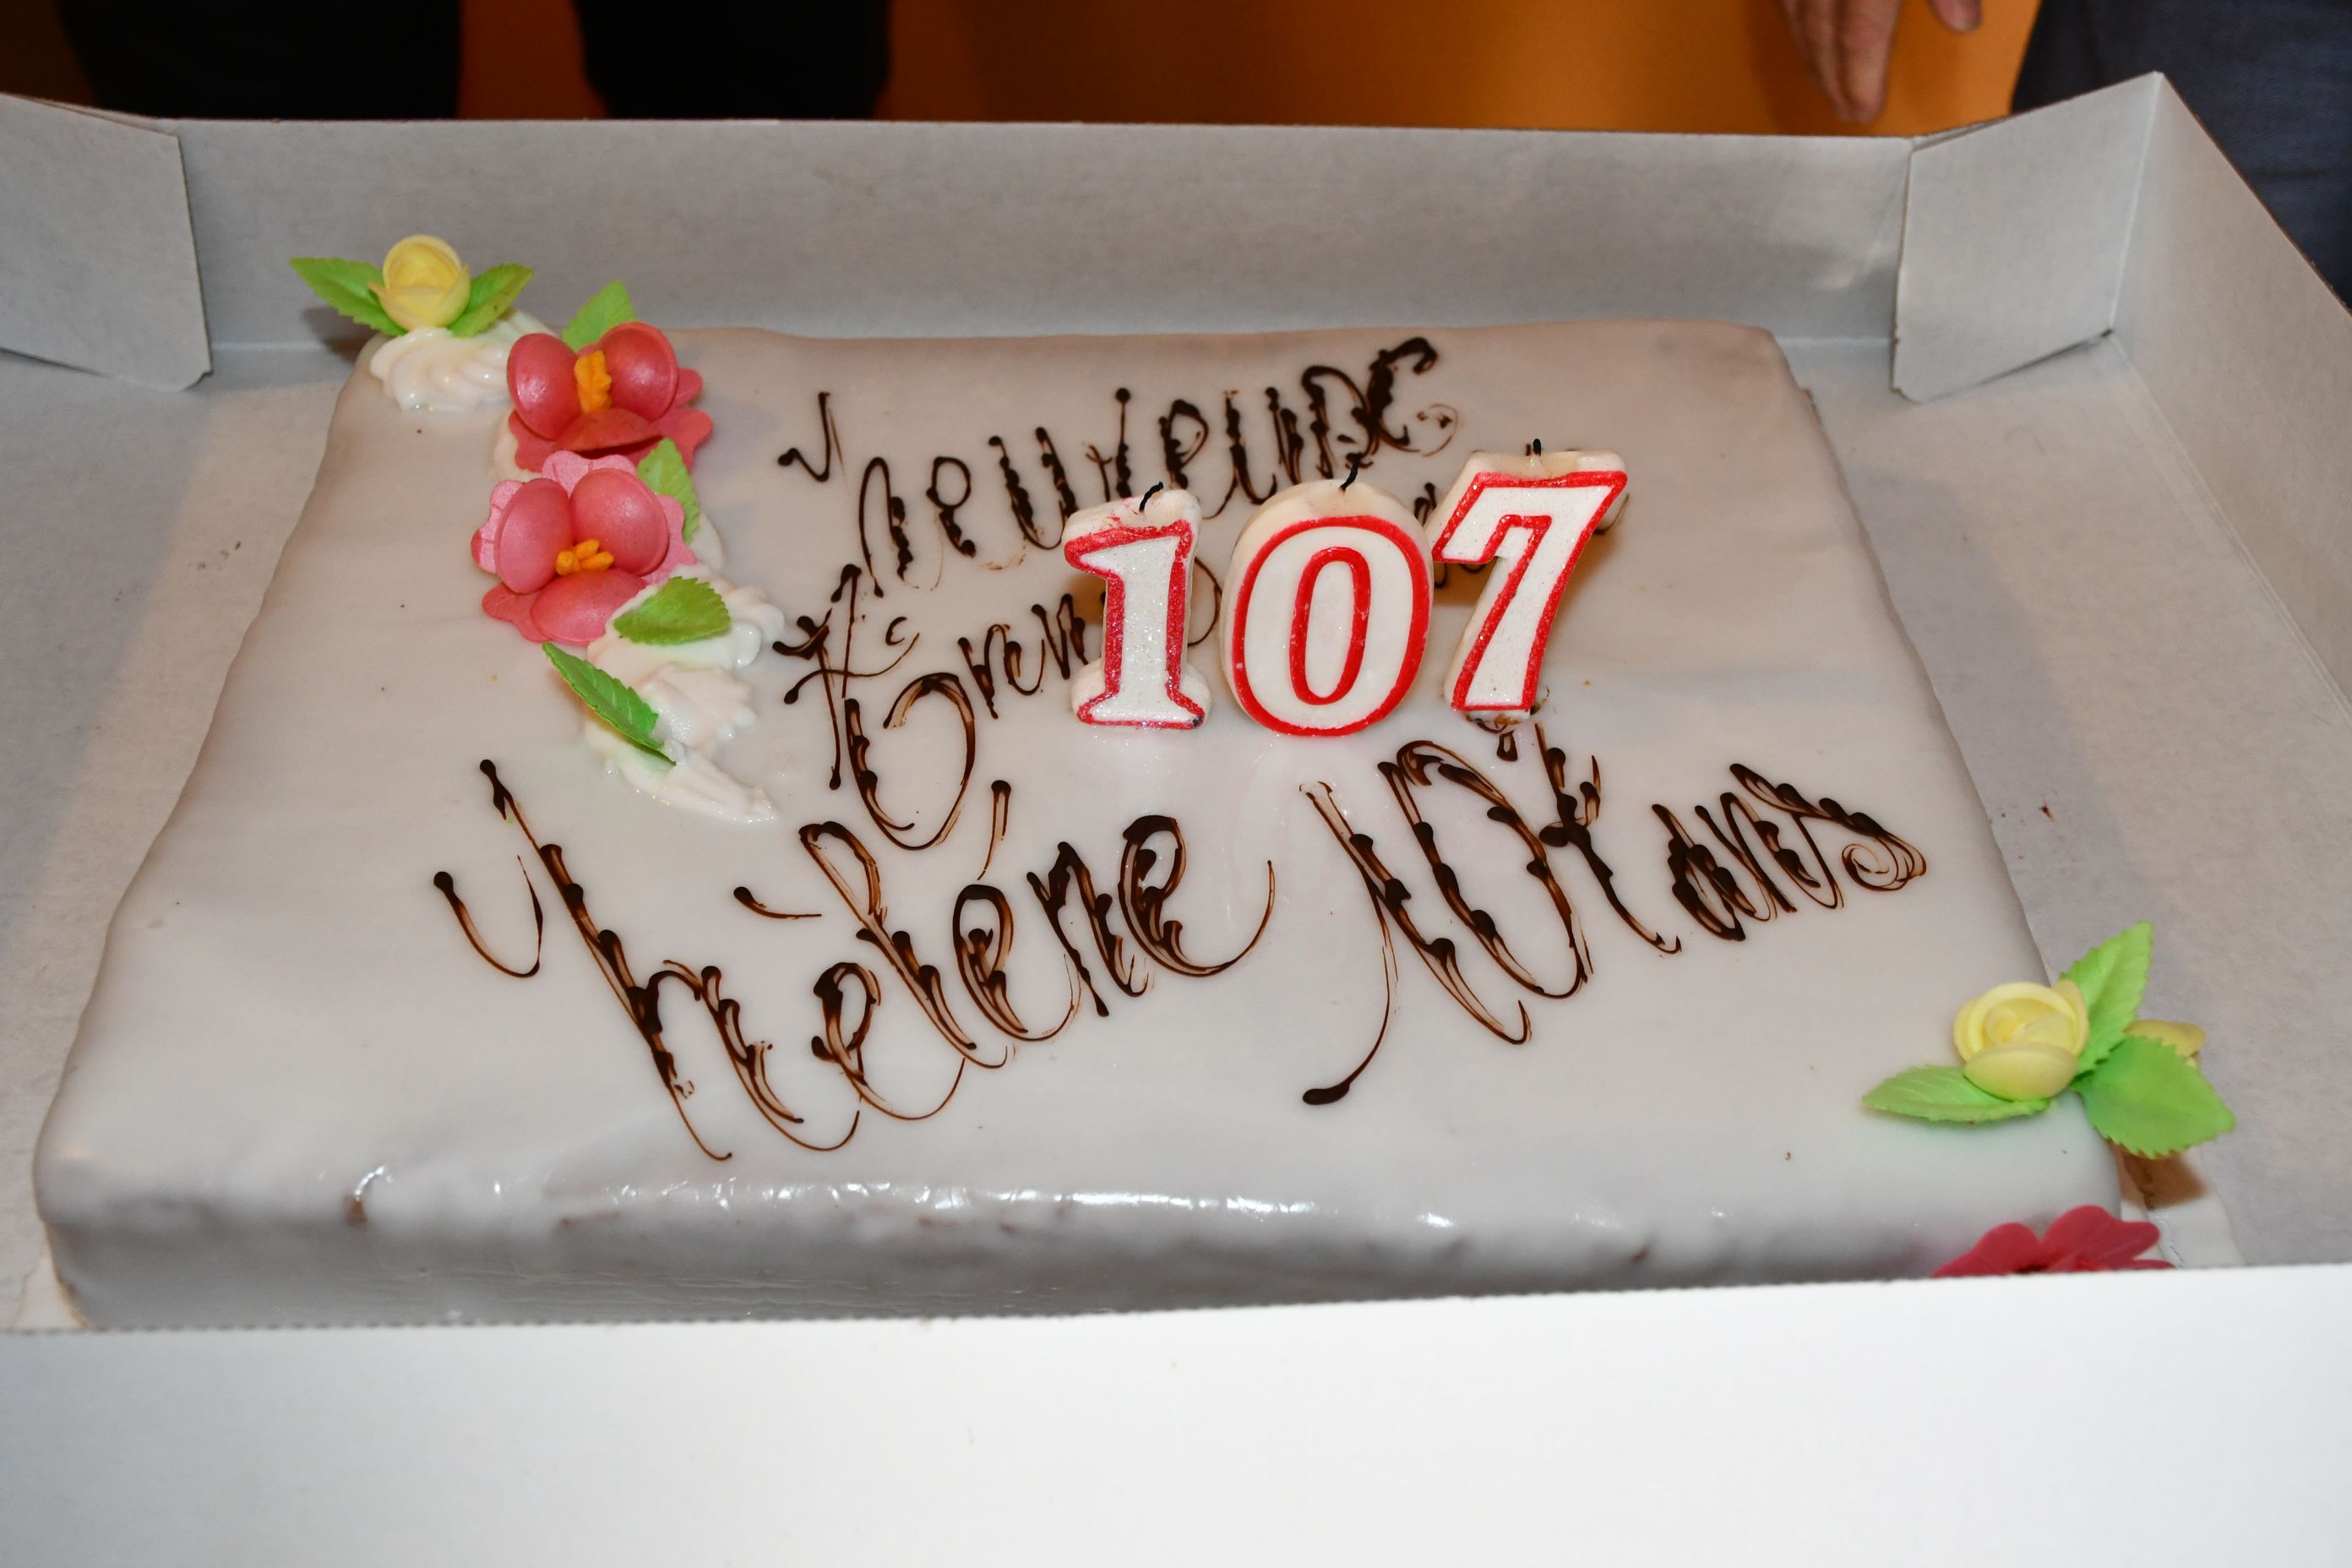 La doyenne de St-Philippe fête ses 107 ans !